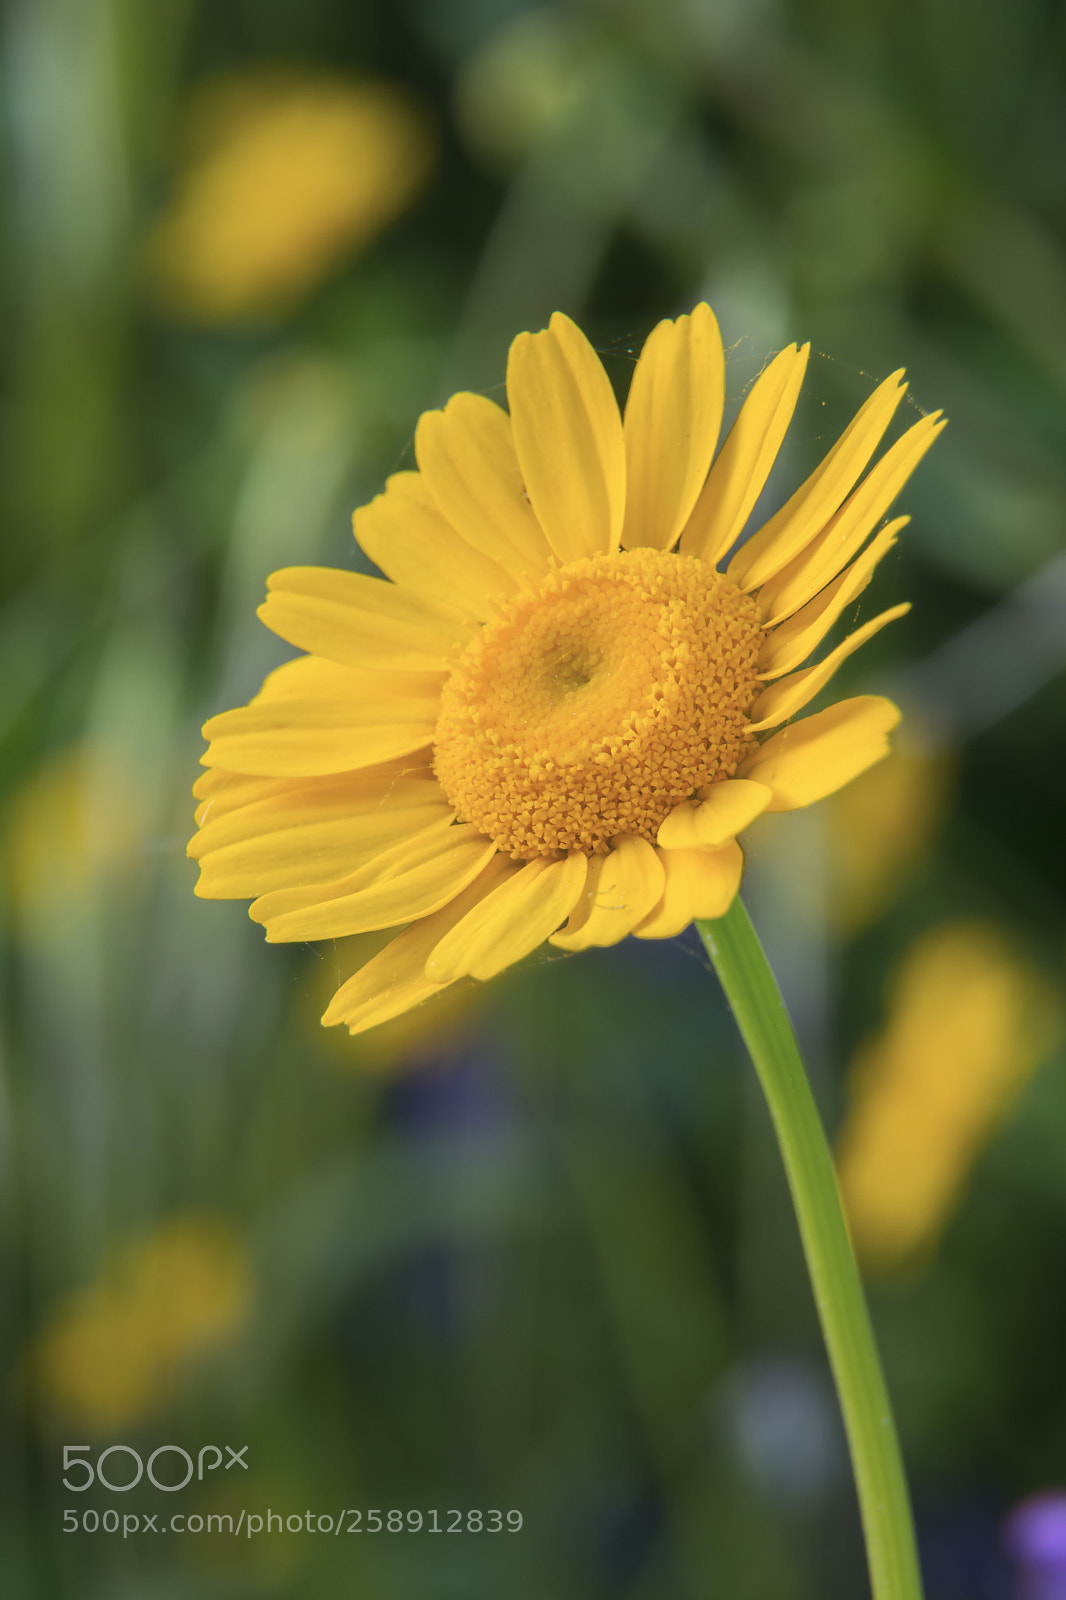 Nikon D7100 sample photo. Yellow daisy photography